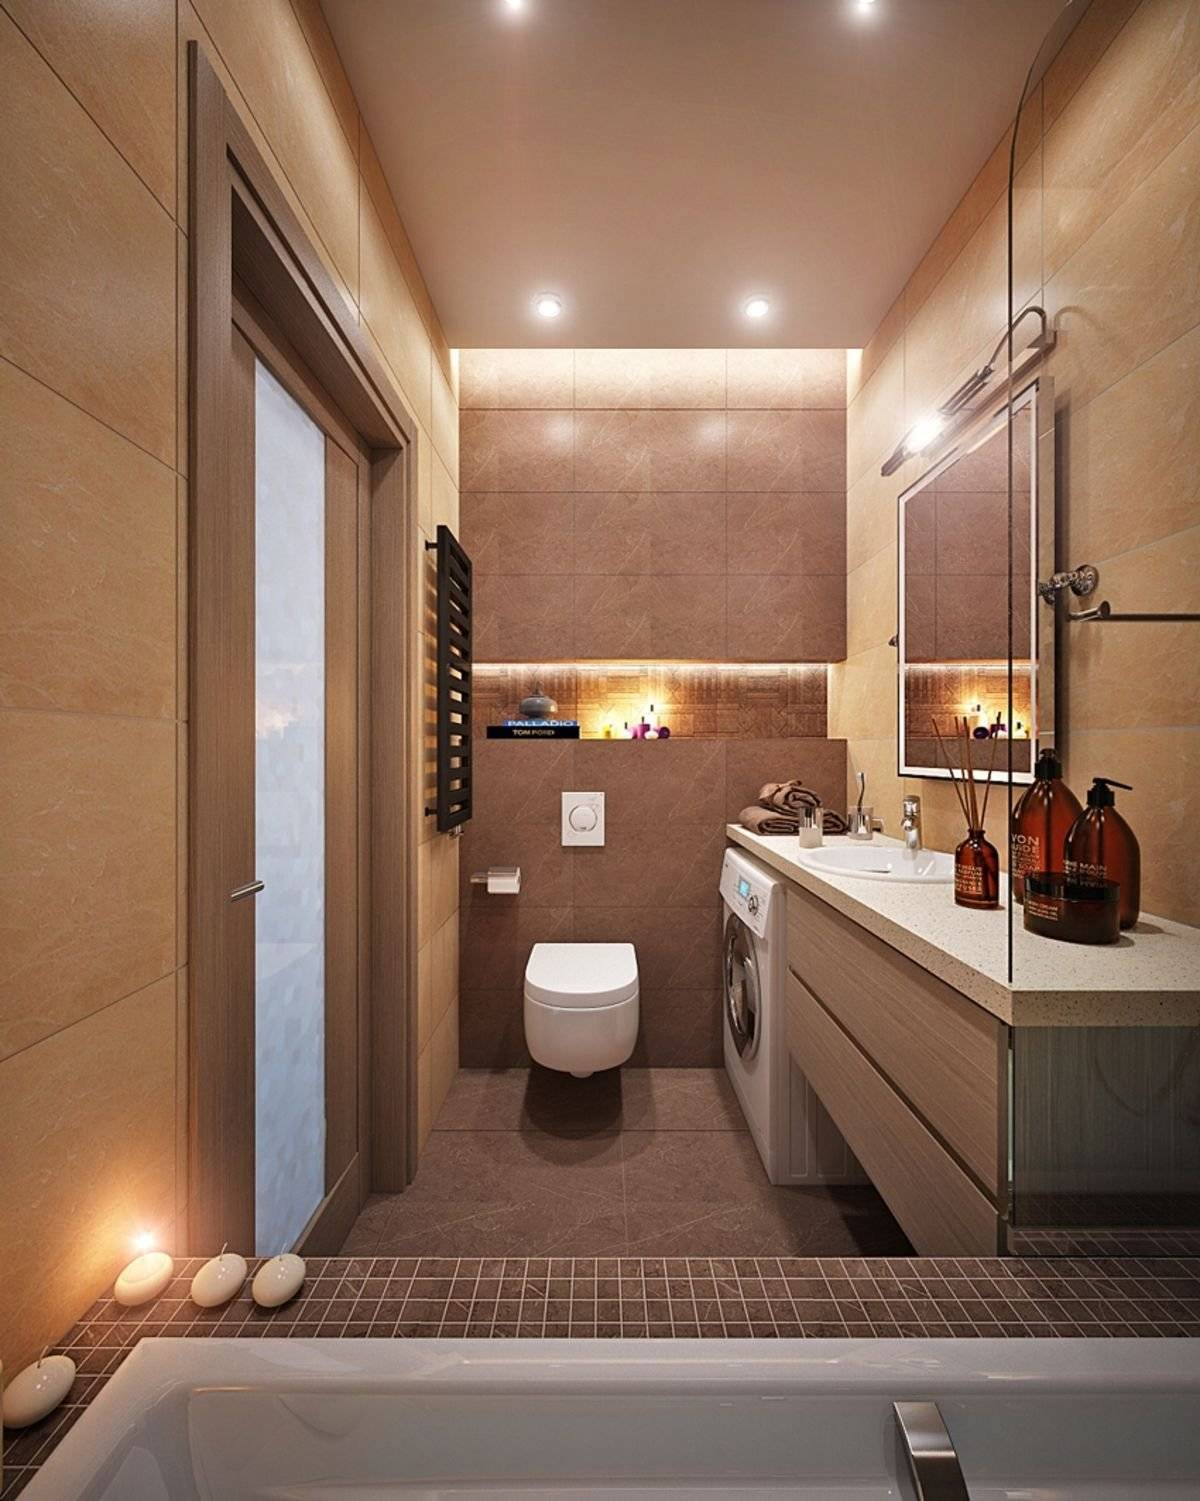 ванная комната 5 кв м санузел совмещенный дизайн